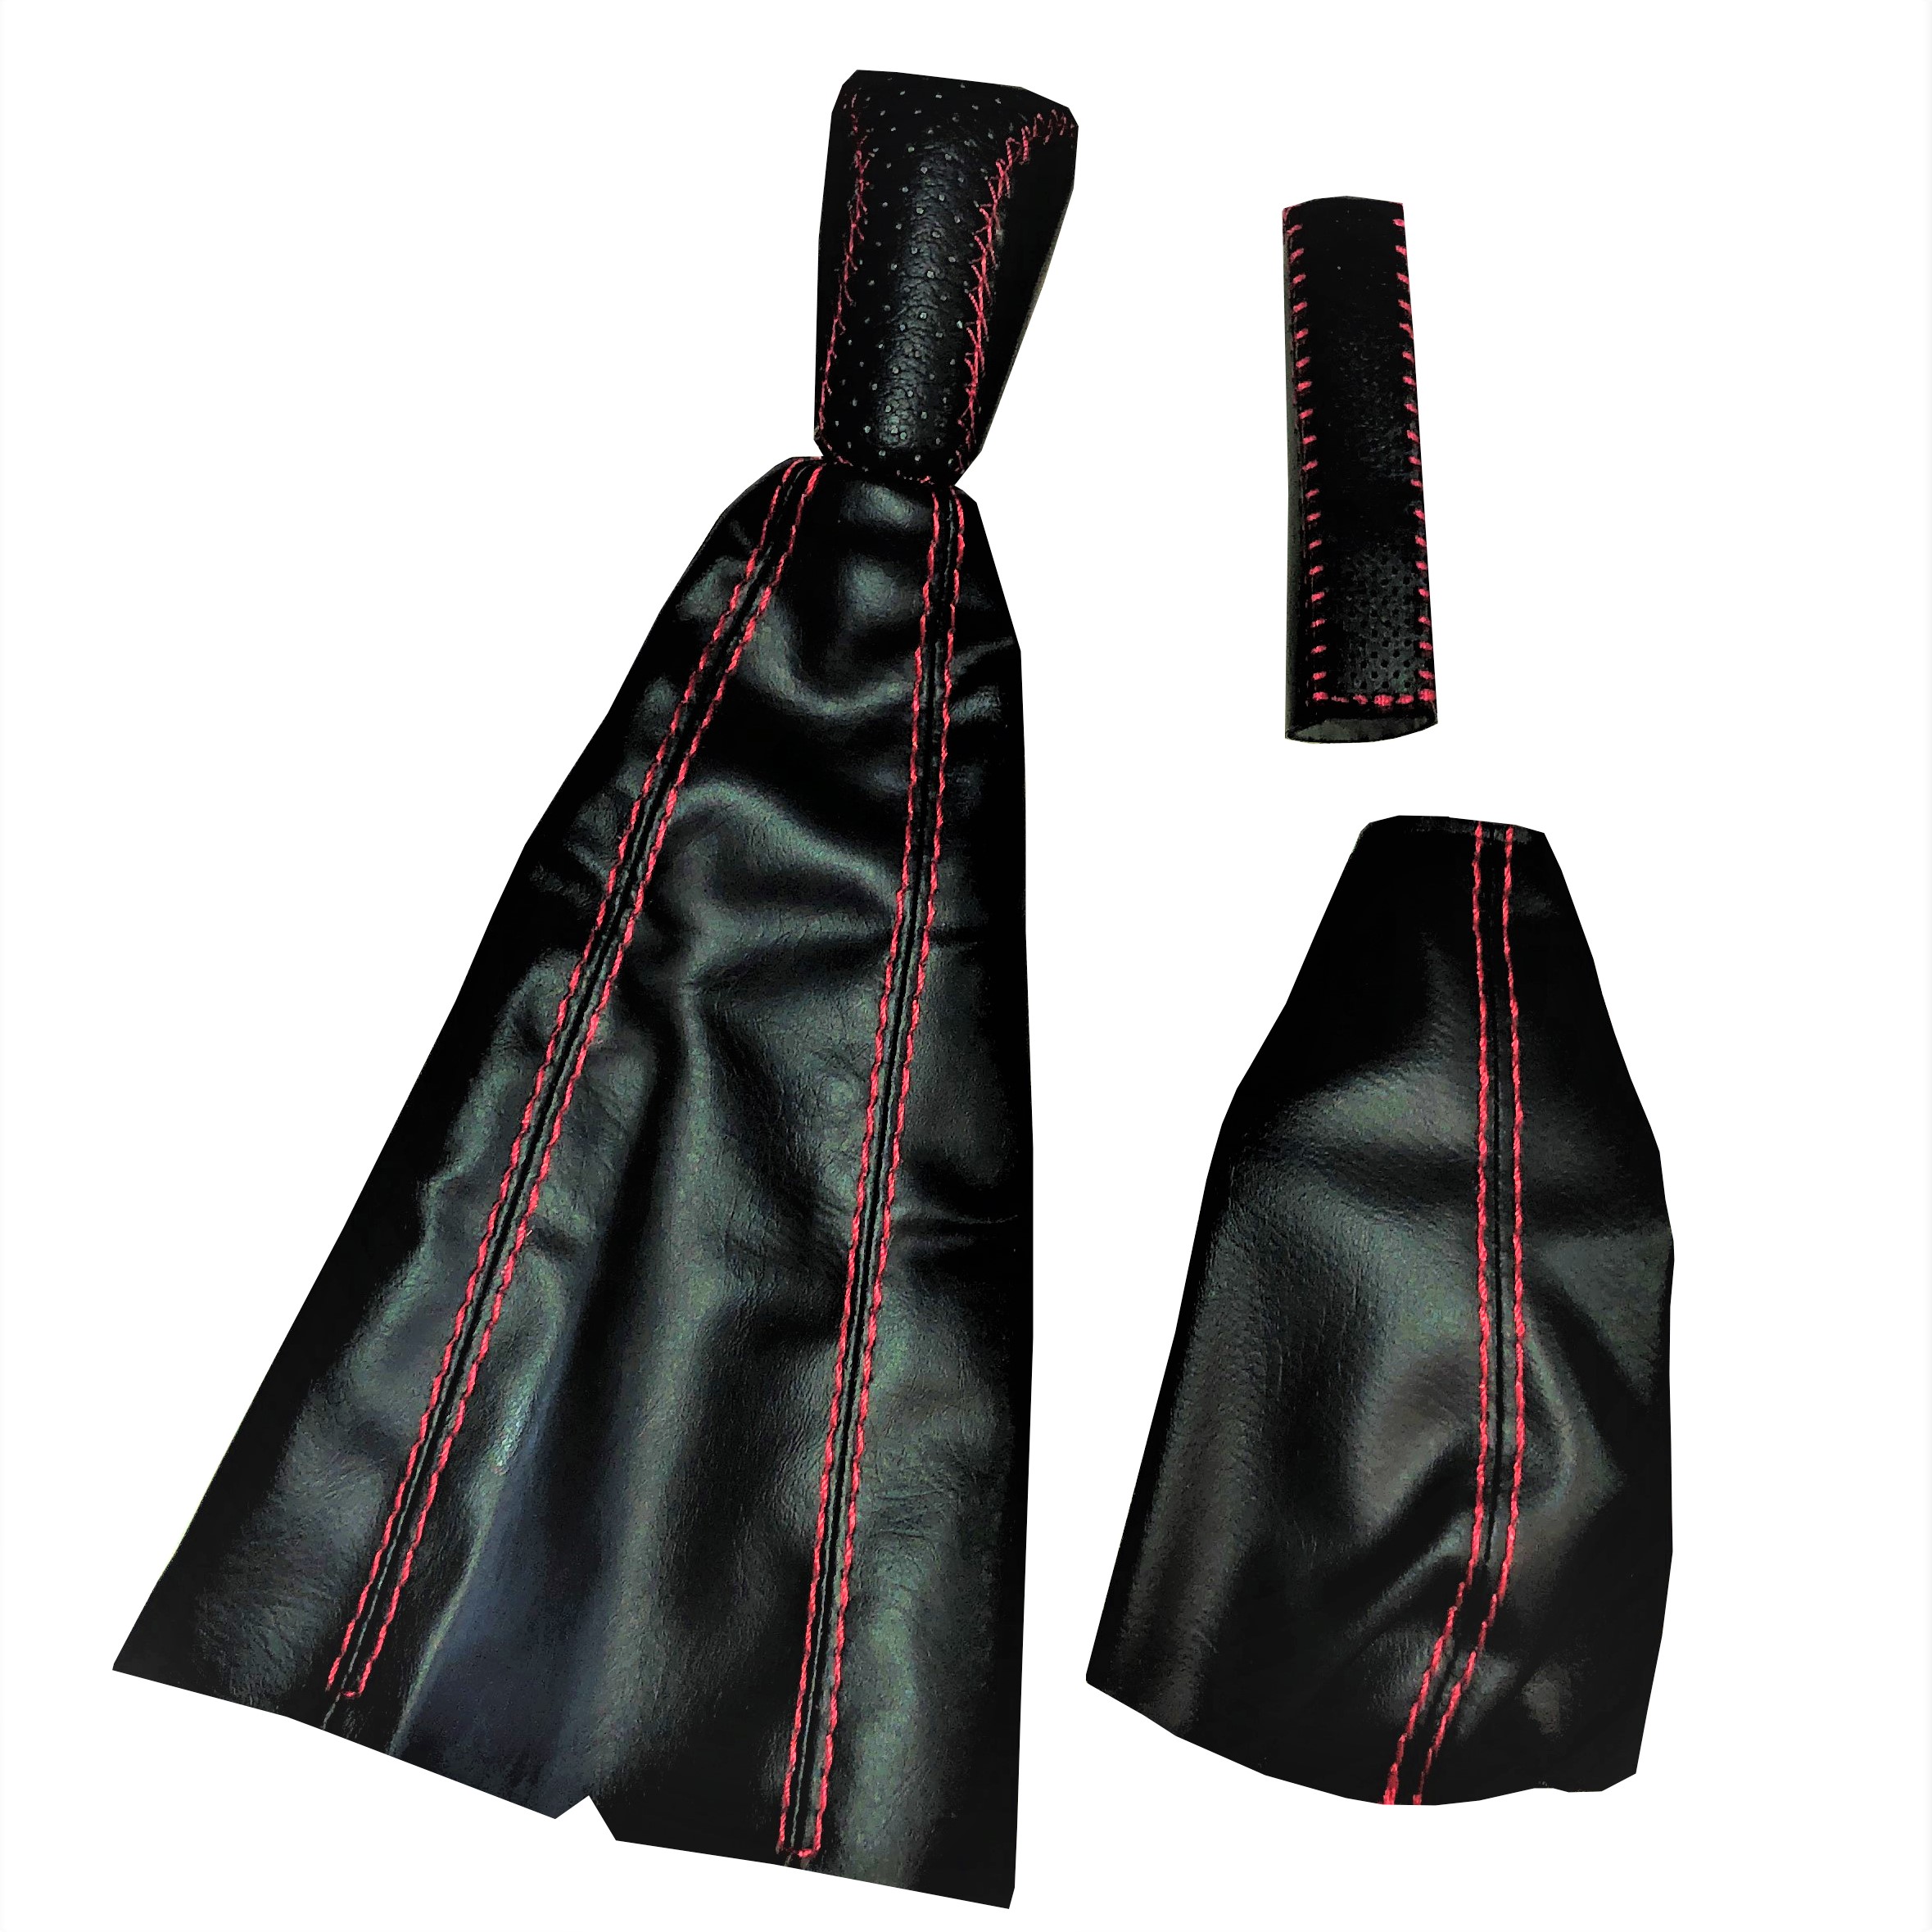 سردنده مدل BRL مناسب برای تیبا به همراه گردگیر دنده گردگیر ترمز دستی و روکش ترمز دستی